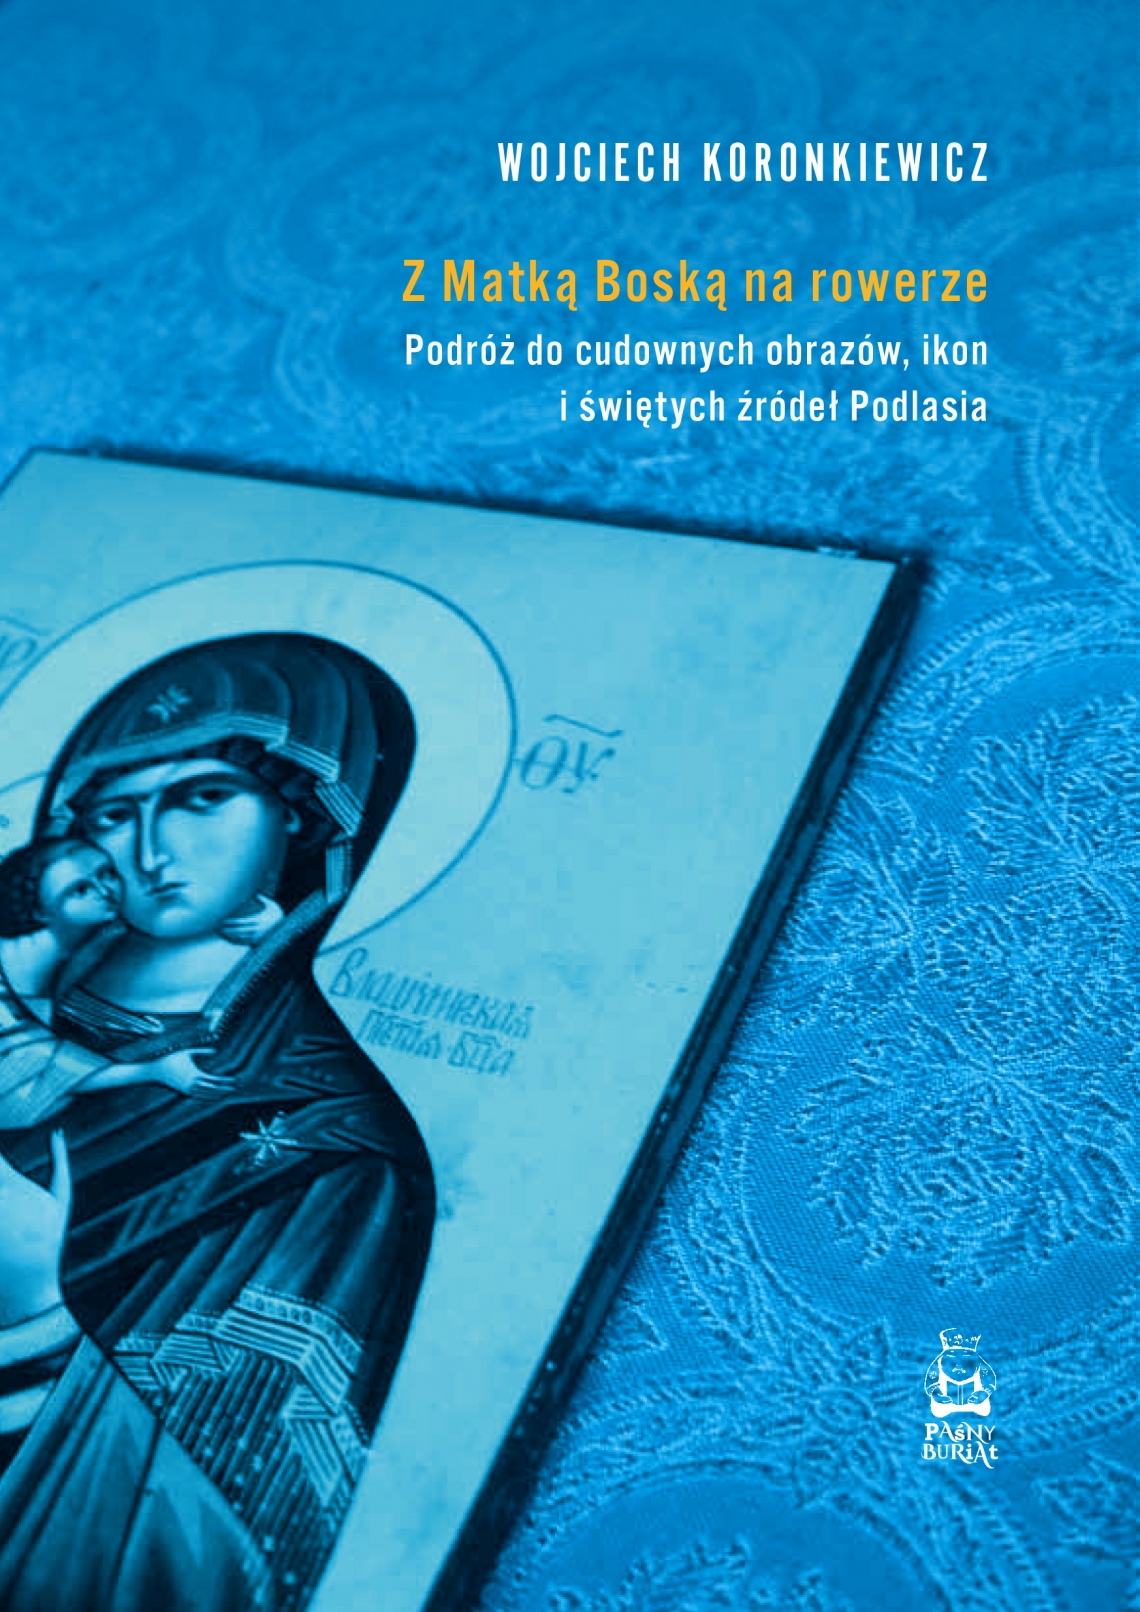 niebieska okładka książki; z lewego rogu wyłania się ikona Dogurodzicy, w prawym górnym rogu tytuł książki Wojciech Koronkiewicz "Z Matką Boską na rowerze"